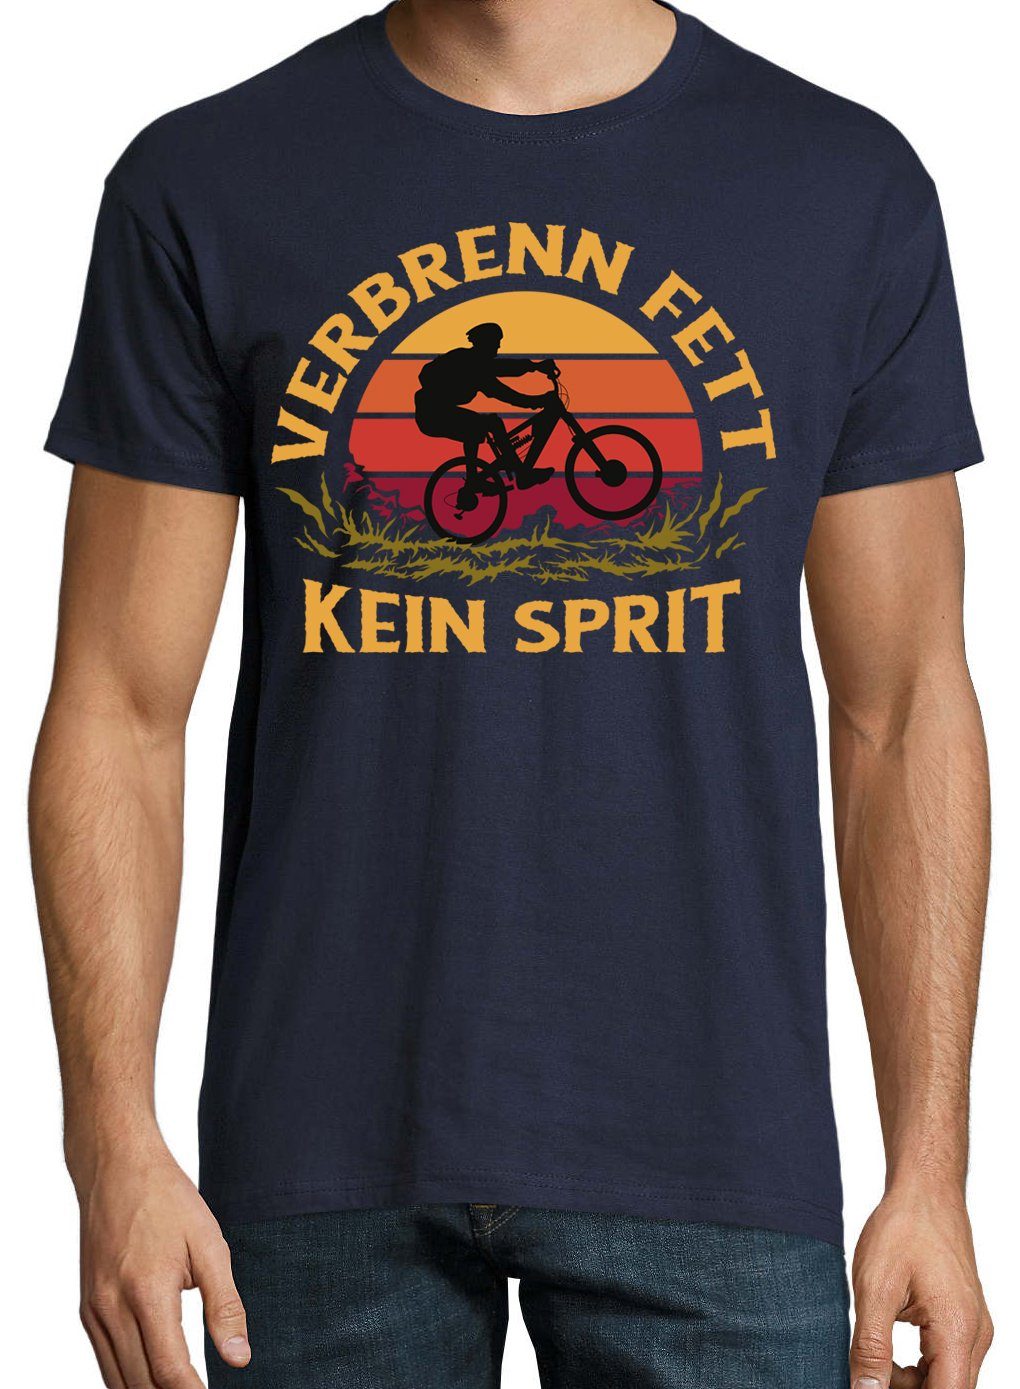 Designz Spruch "VerbrennFett" T-Shirt mit Navyblau T-Shirt Herren Youth lustigem